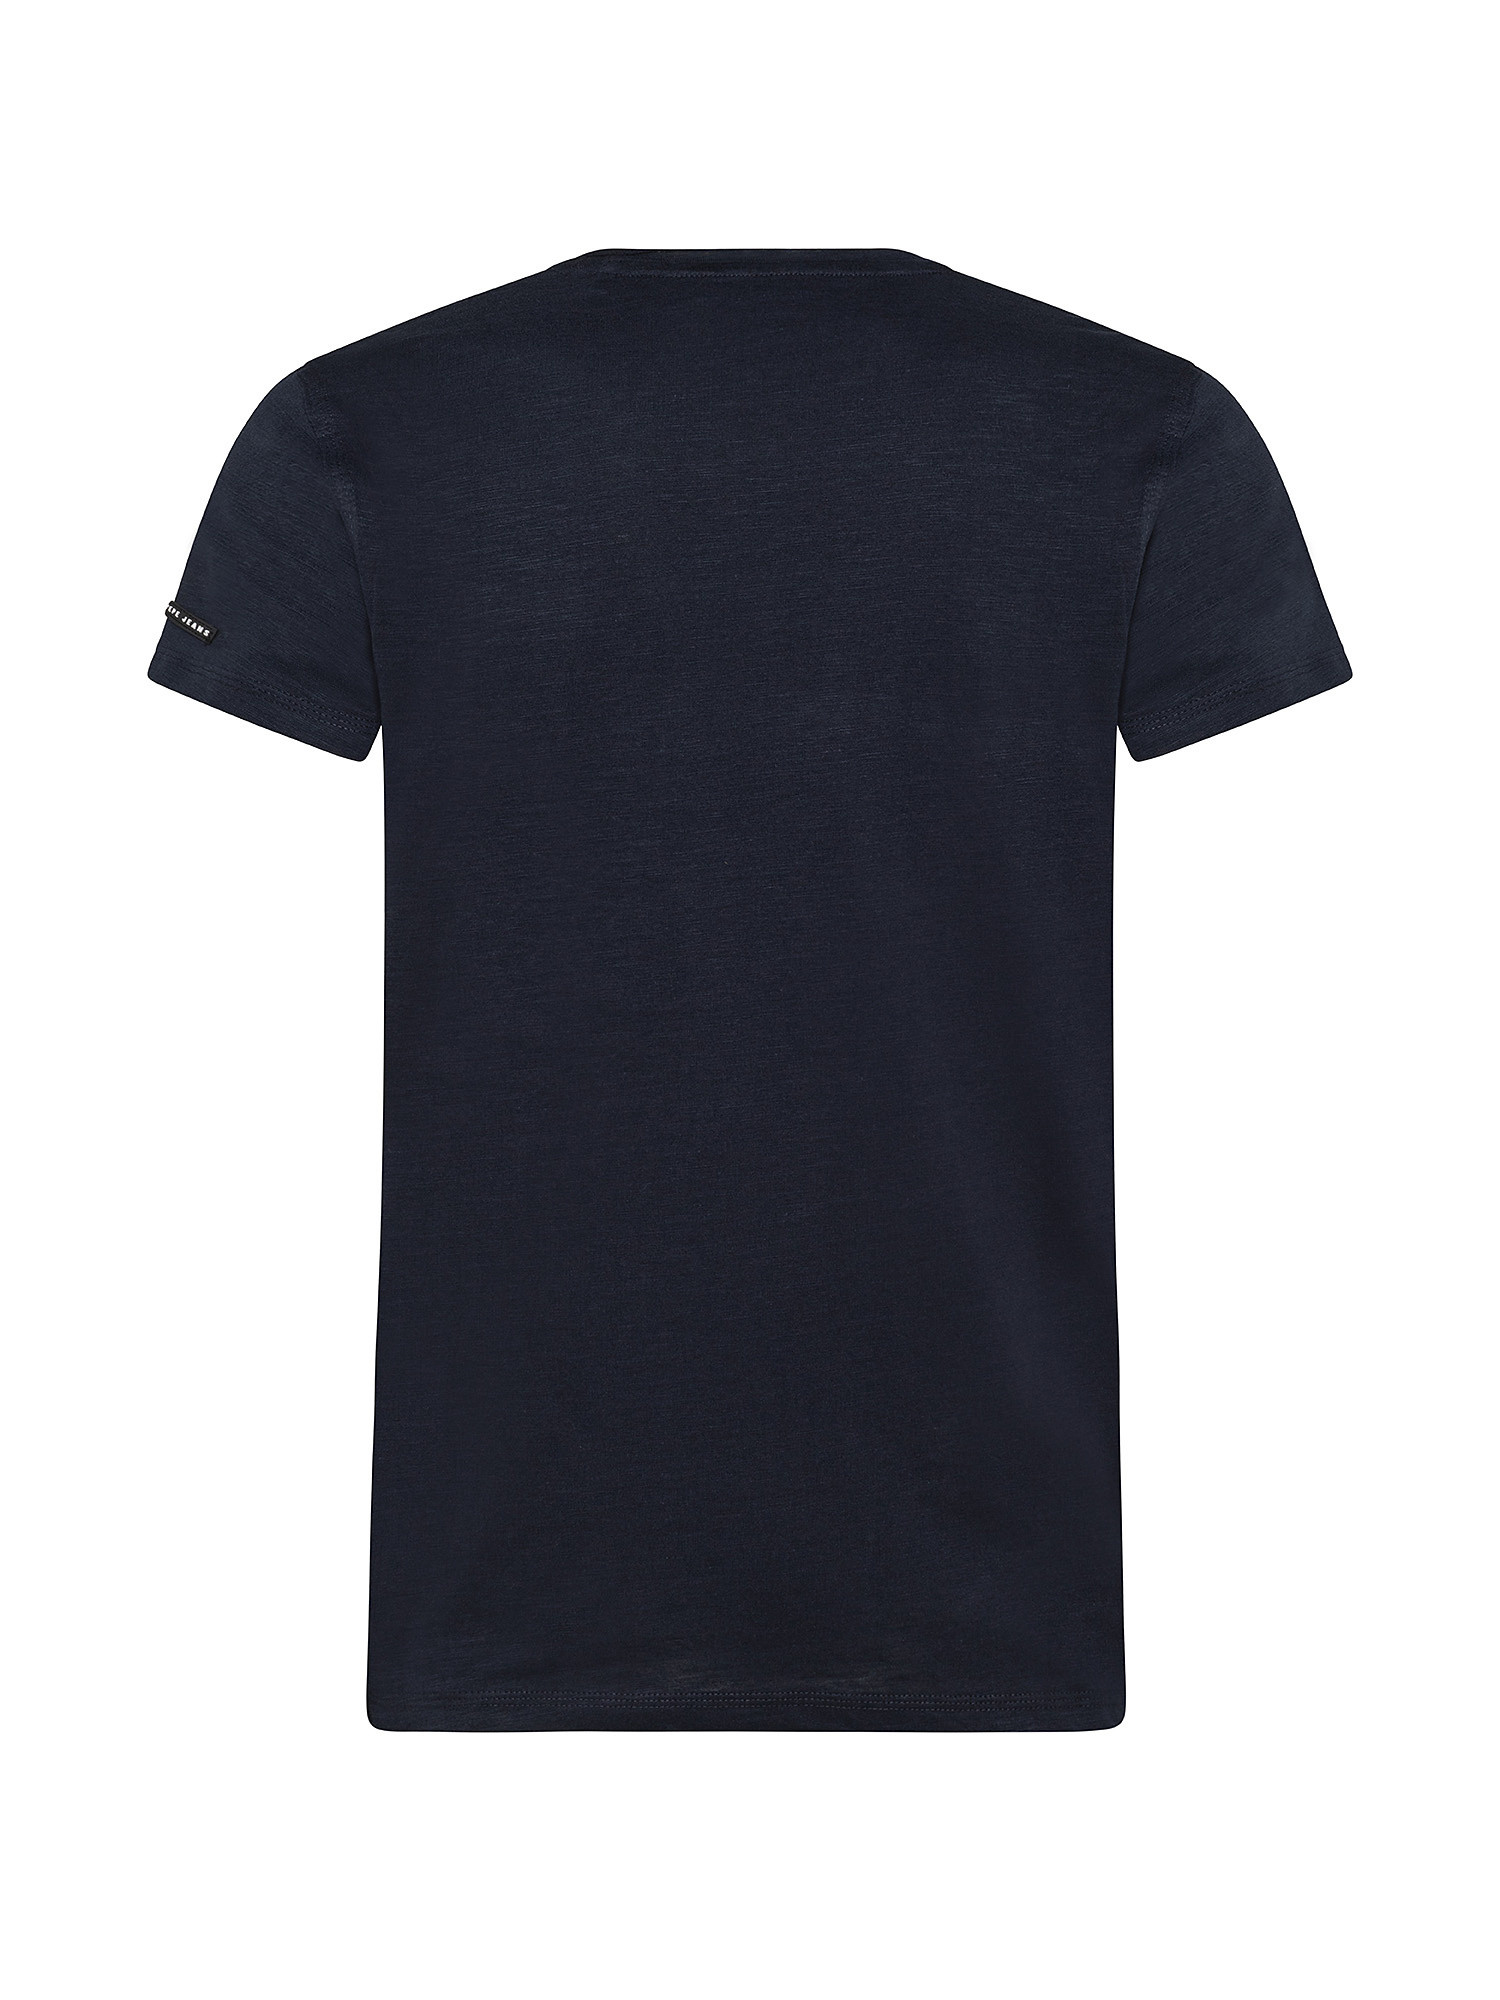 Sherlock cotton T-shirt, Dark Blue, large image number 1